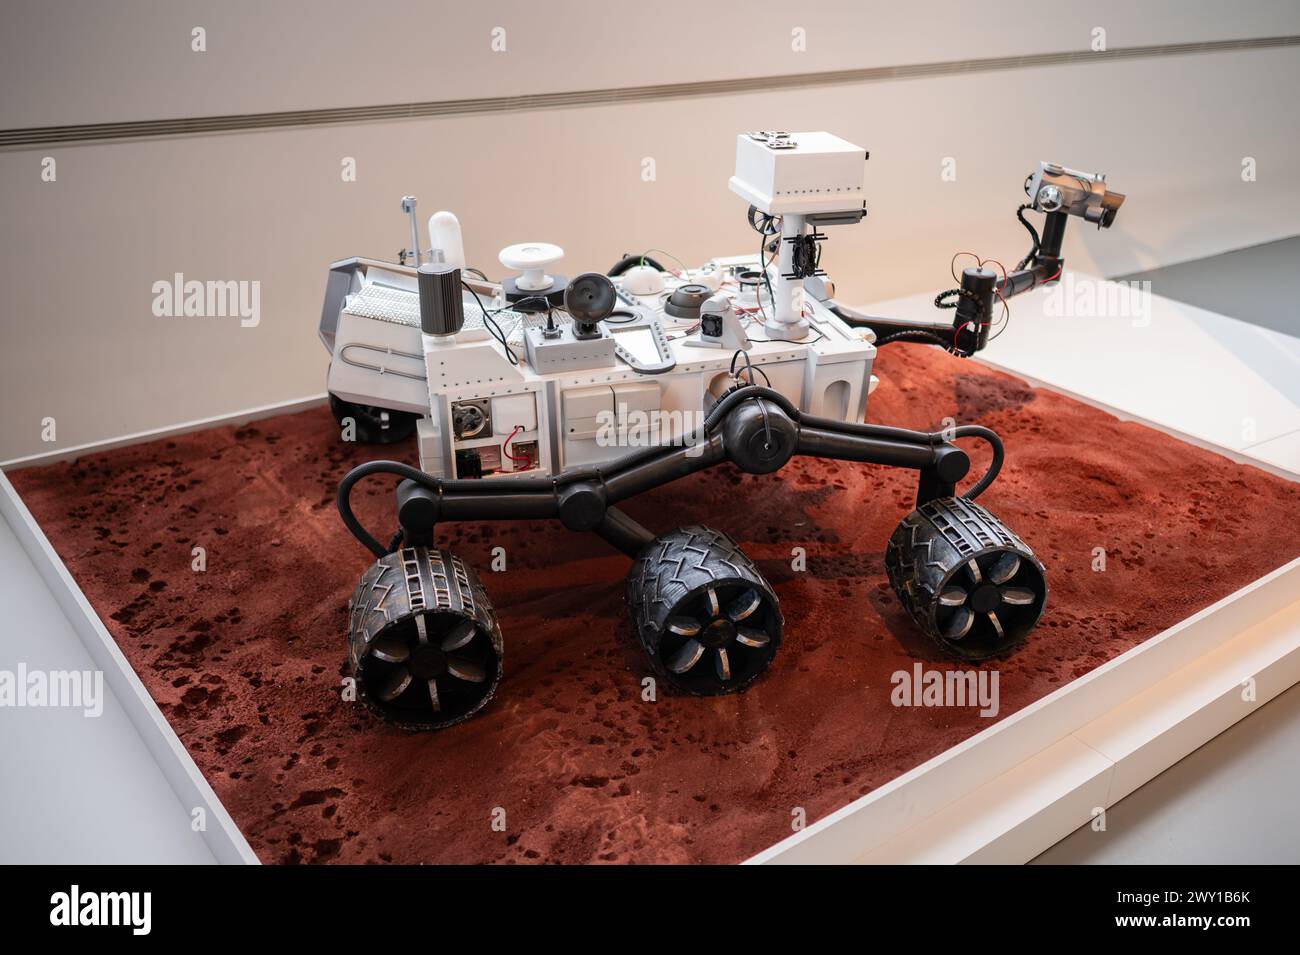 Curiosidad Mars rover. Museo Tecnológico de la Ciudad de la Movilidad en el Puente de Zaha Hadid (Pabellón Puente), Zaragoza, España Foto de stock